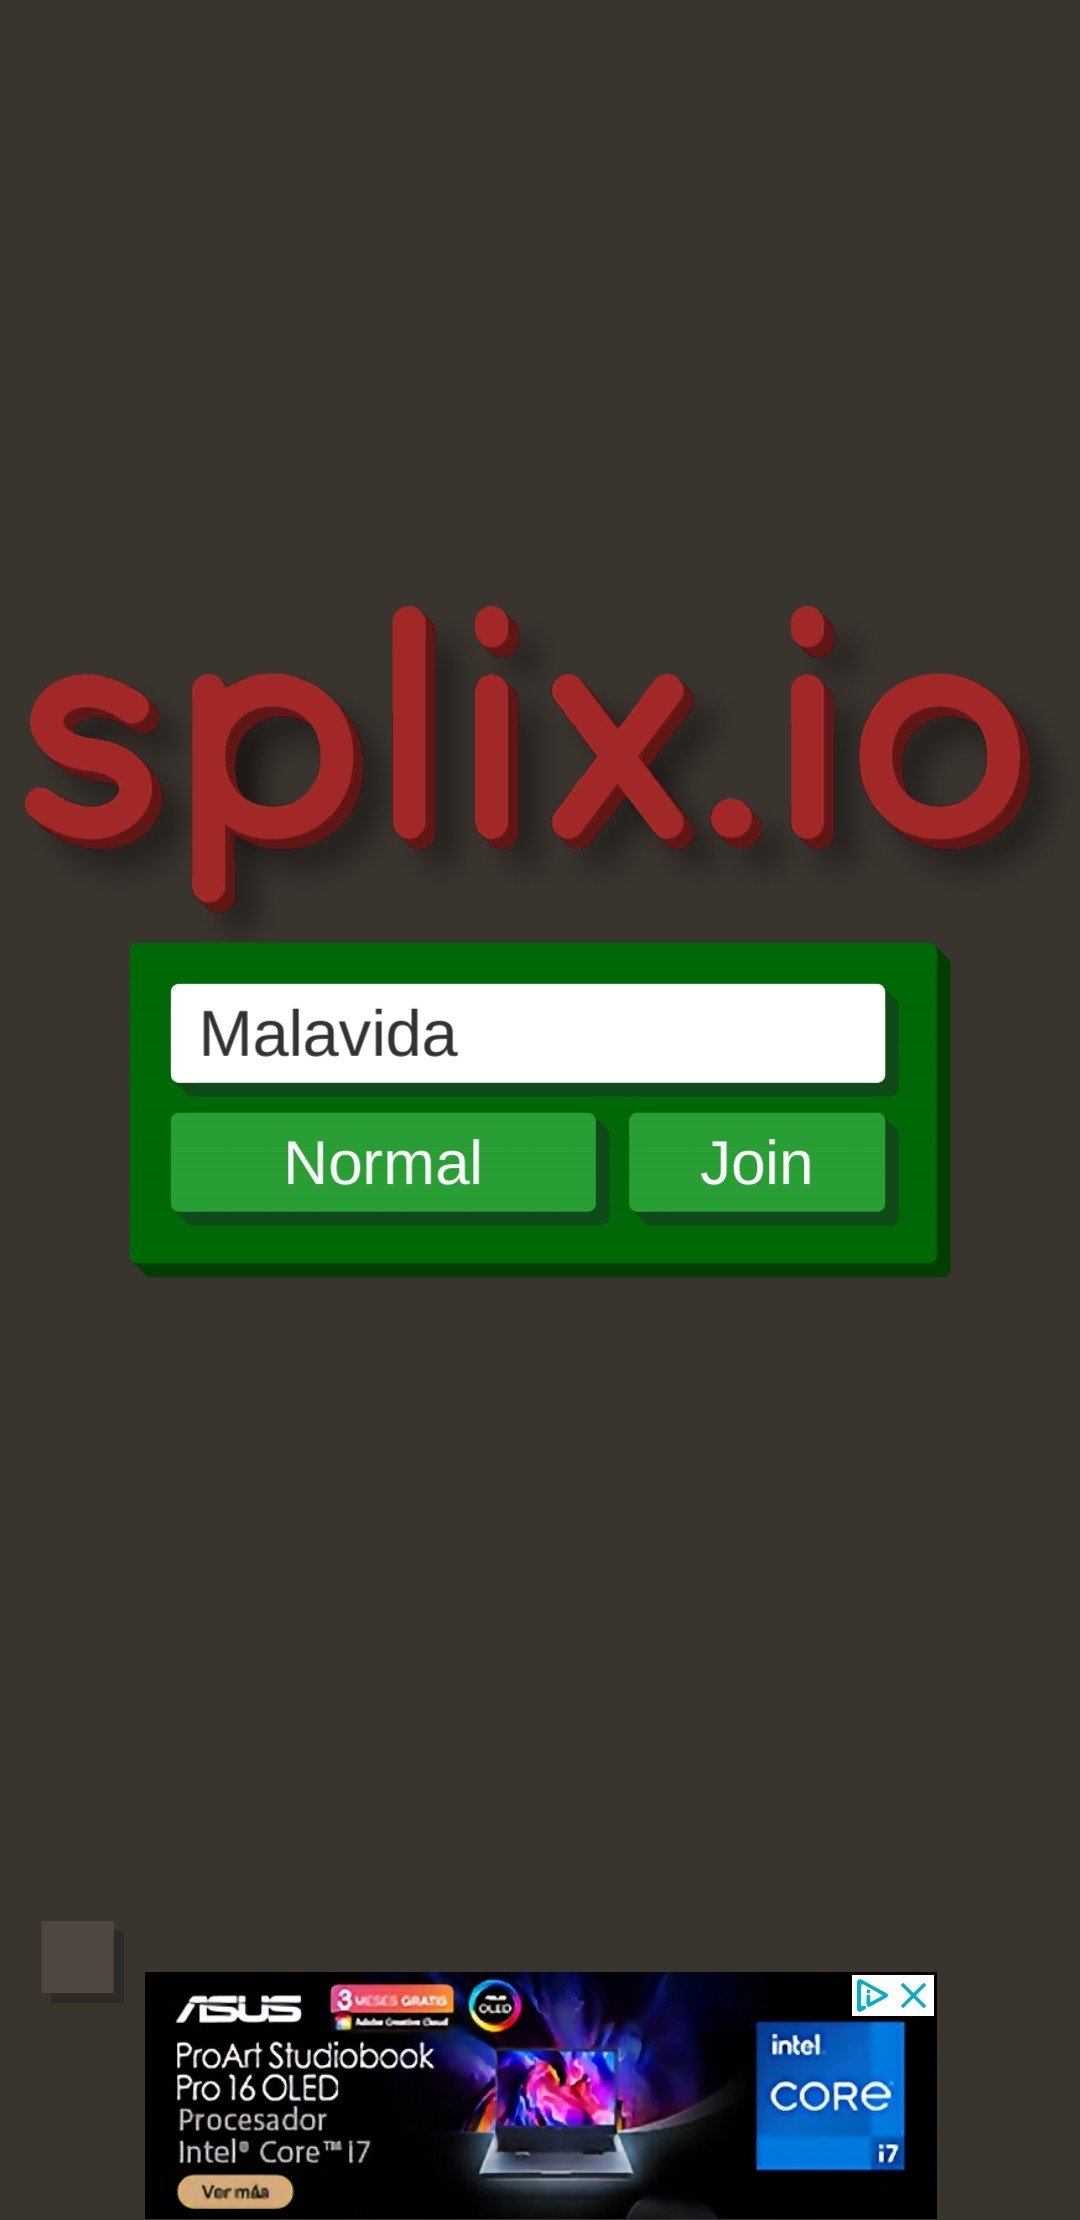 Splix.io Android APK download : r/Splixio